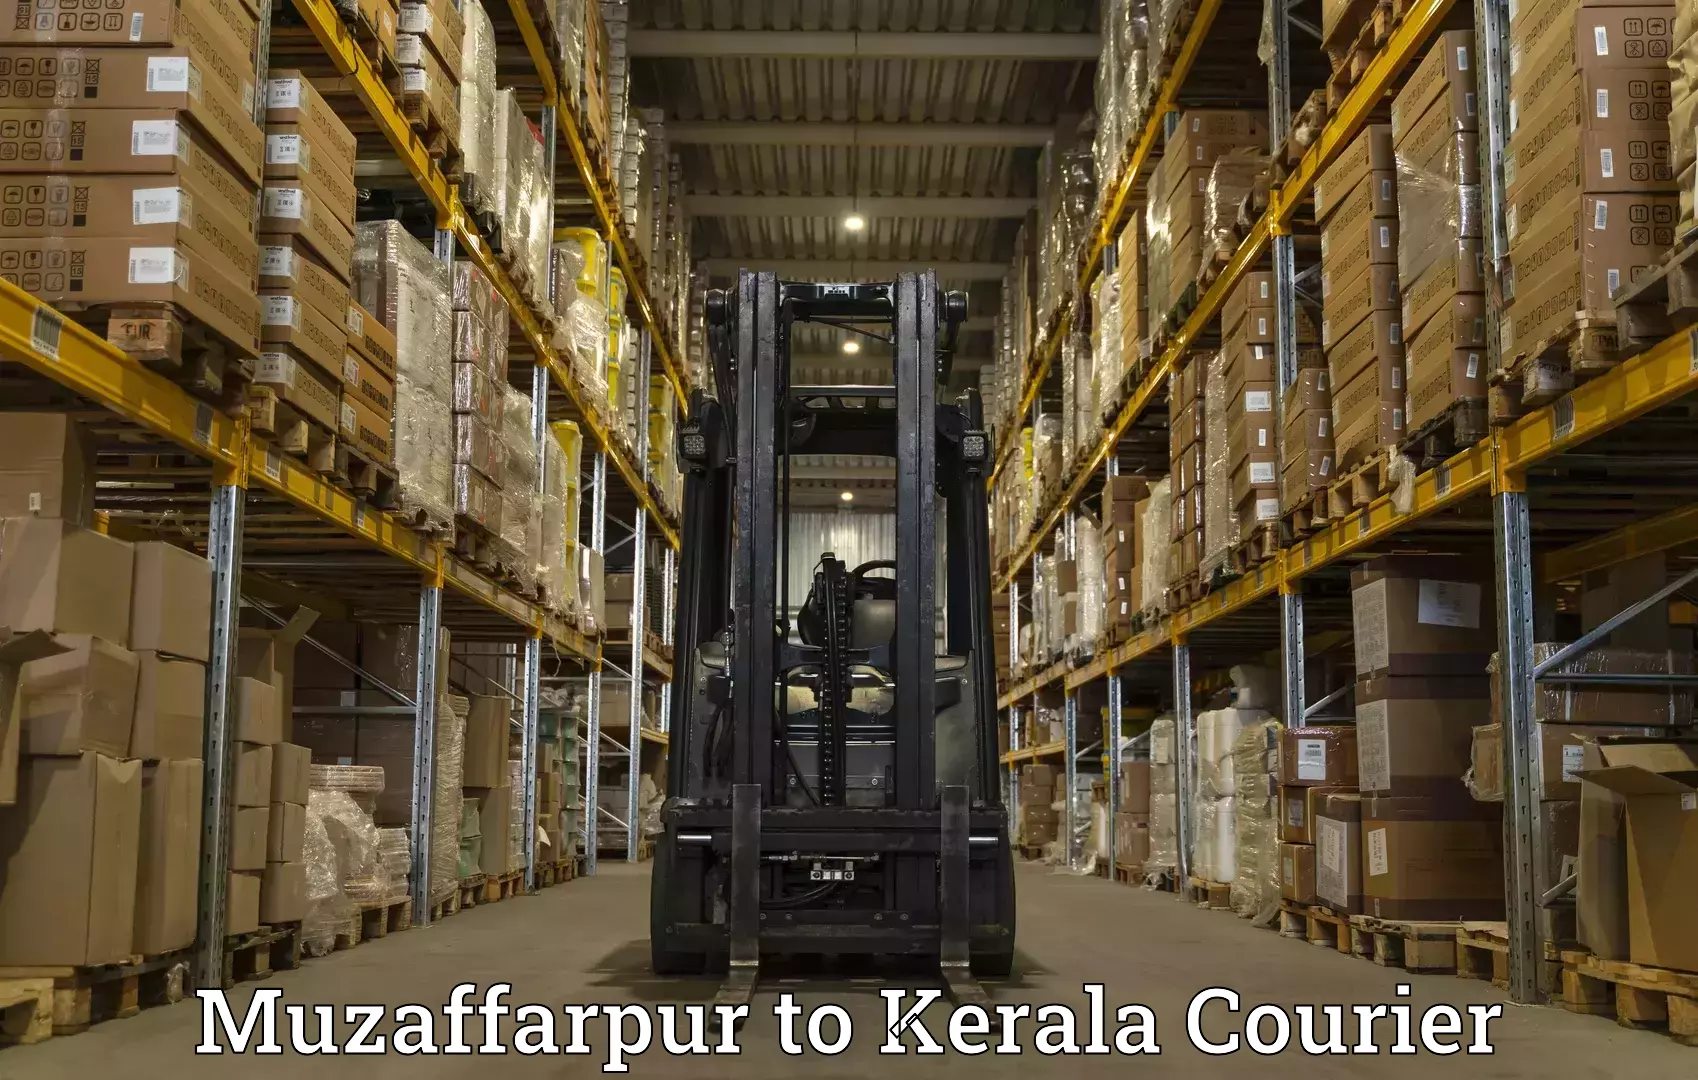 Express logistics providers Muzaffarpur to Vaikom